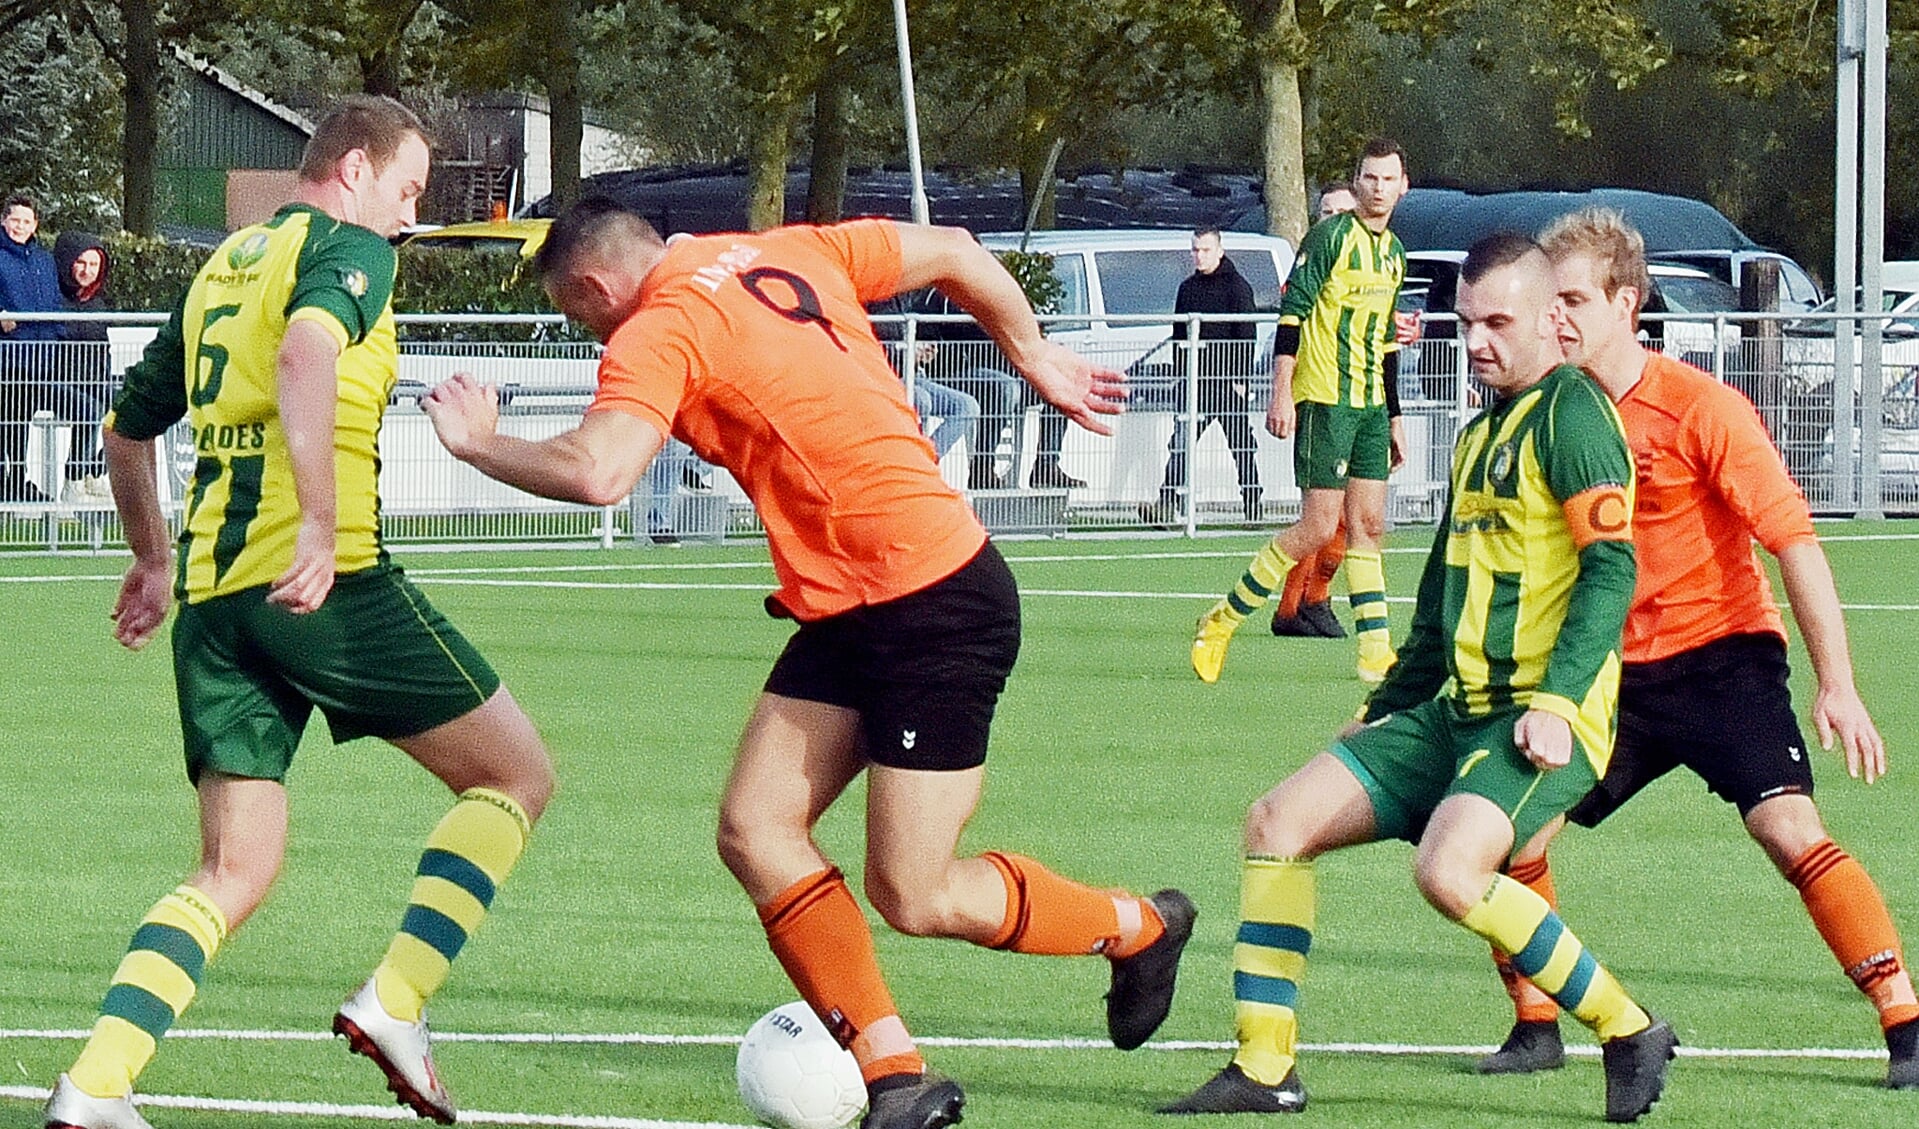 Tegen HSSC’61 scoorde Warmenhoven de winnende treffer.